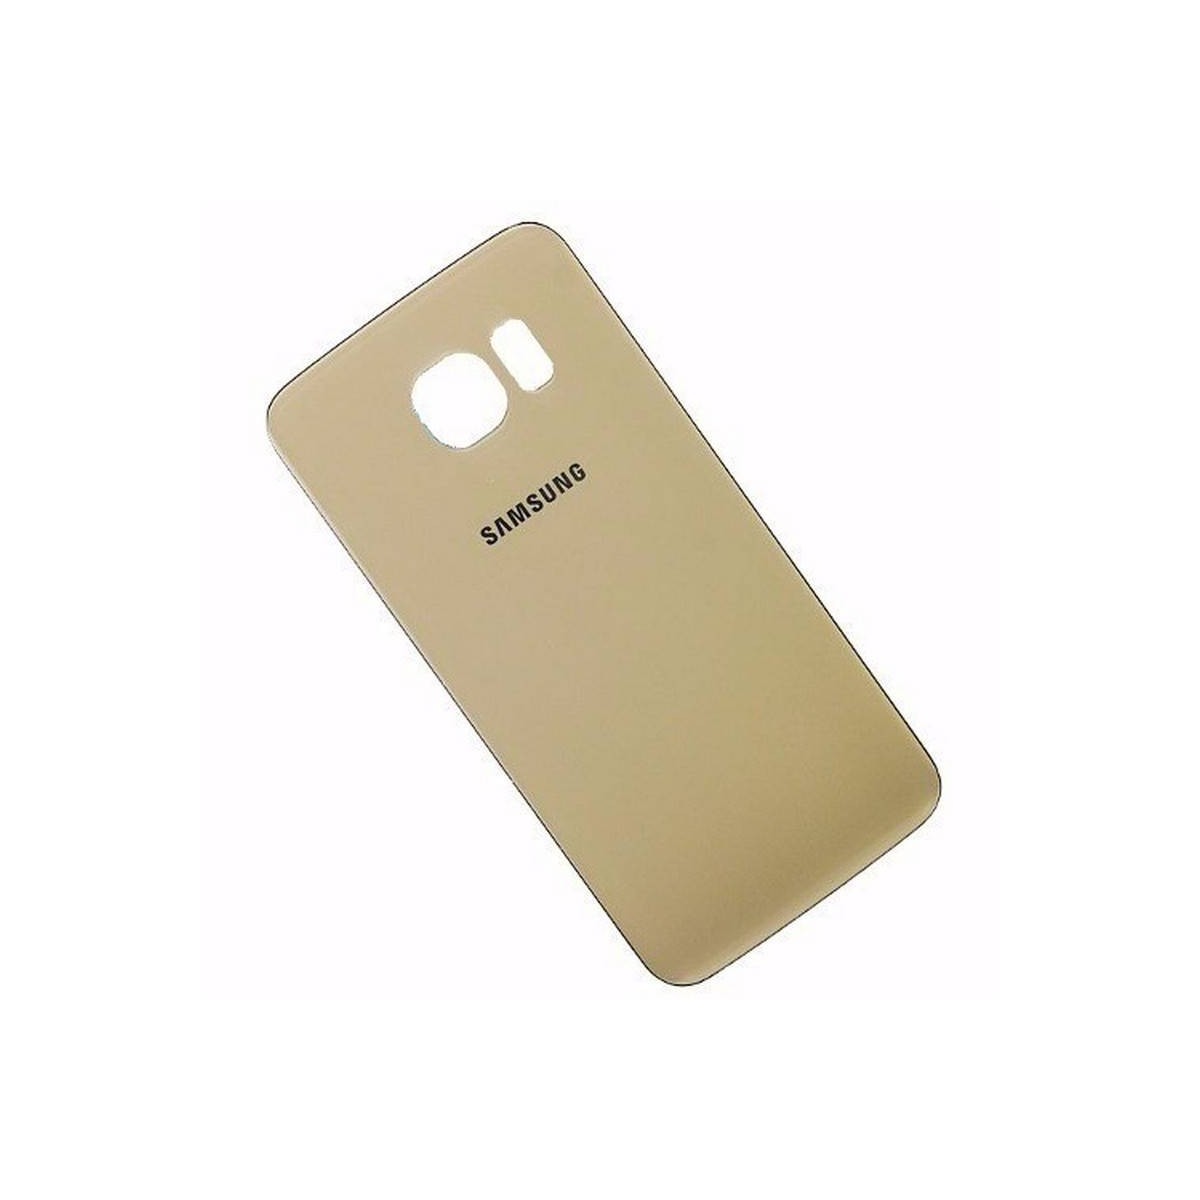 Tapa bateria samsung Galaxy S6 edge G928F ouro